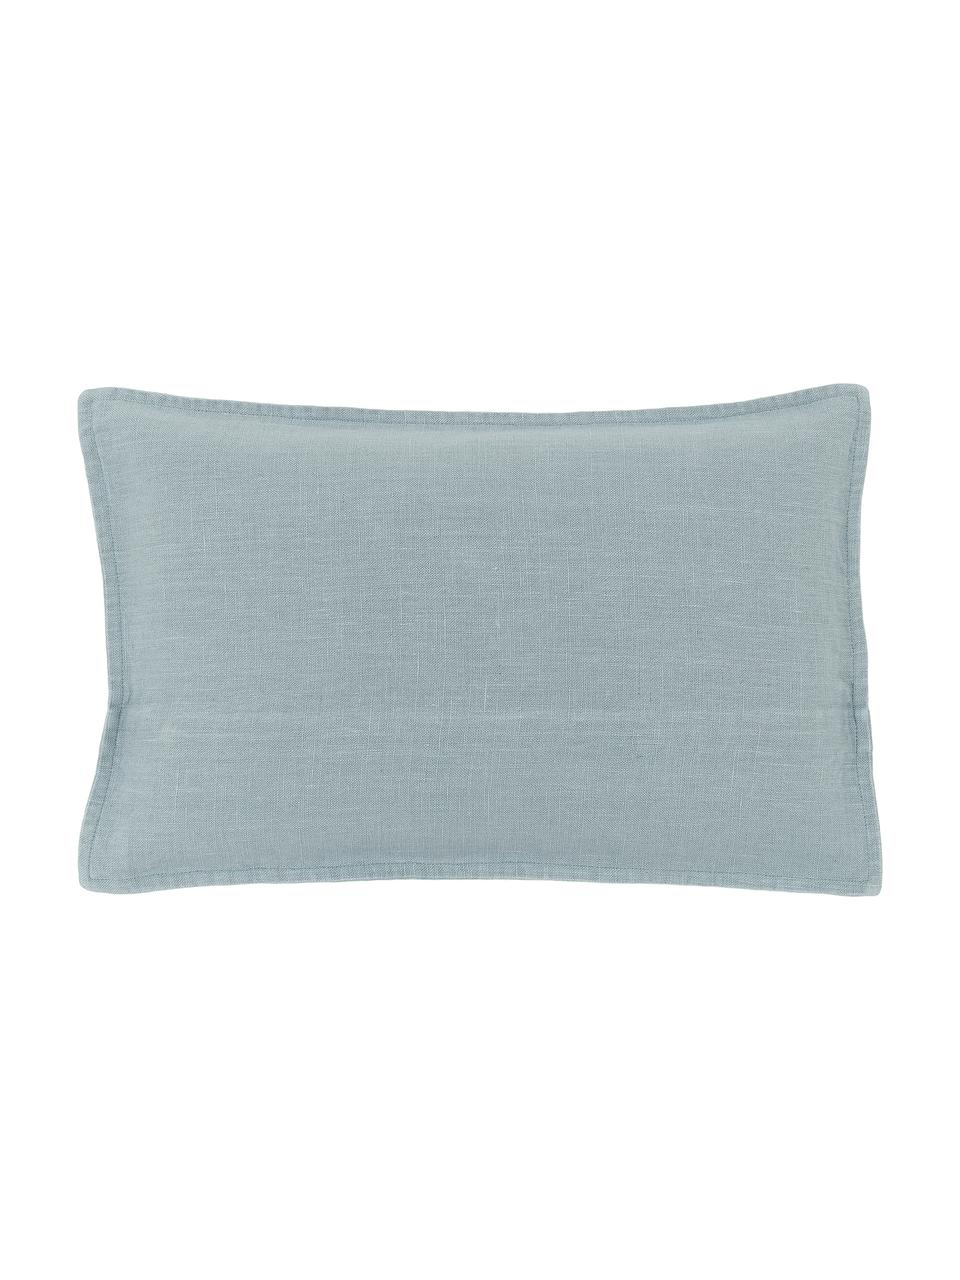 Poszewka na poduszkę z lnu Lanya, 100% len, Jasny niebieski, S 30 x D 50 cm